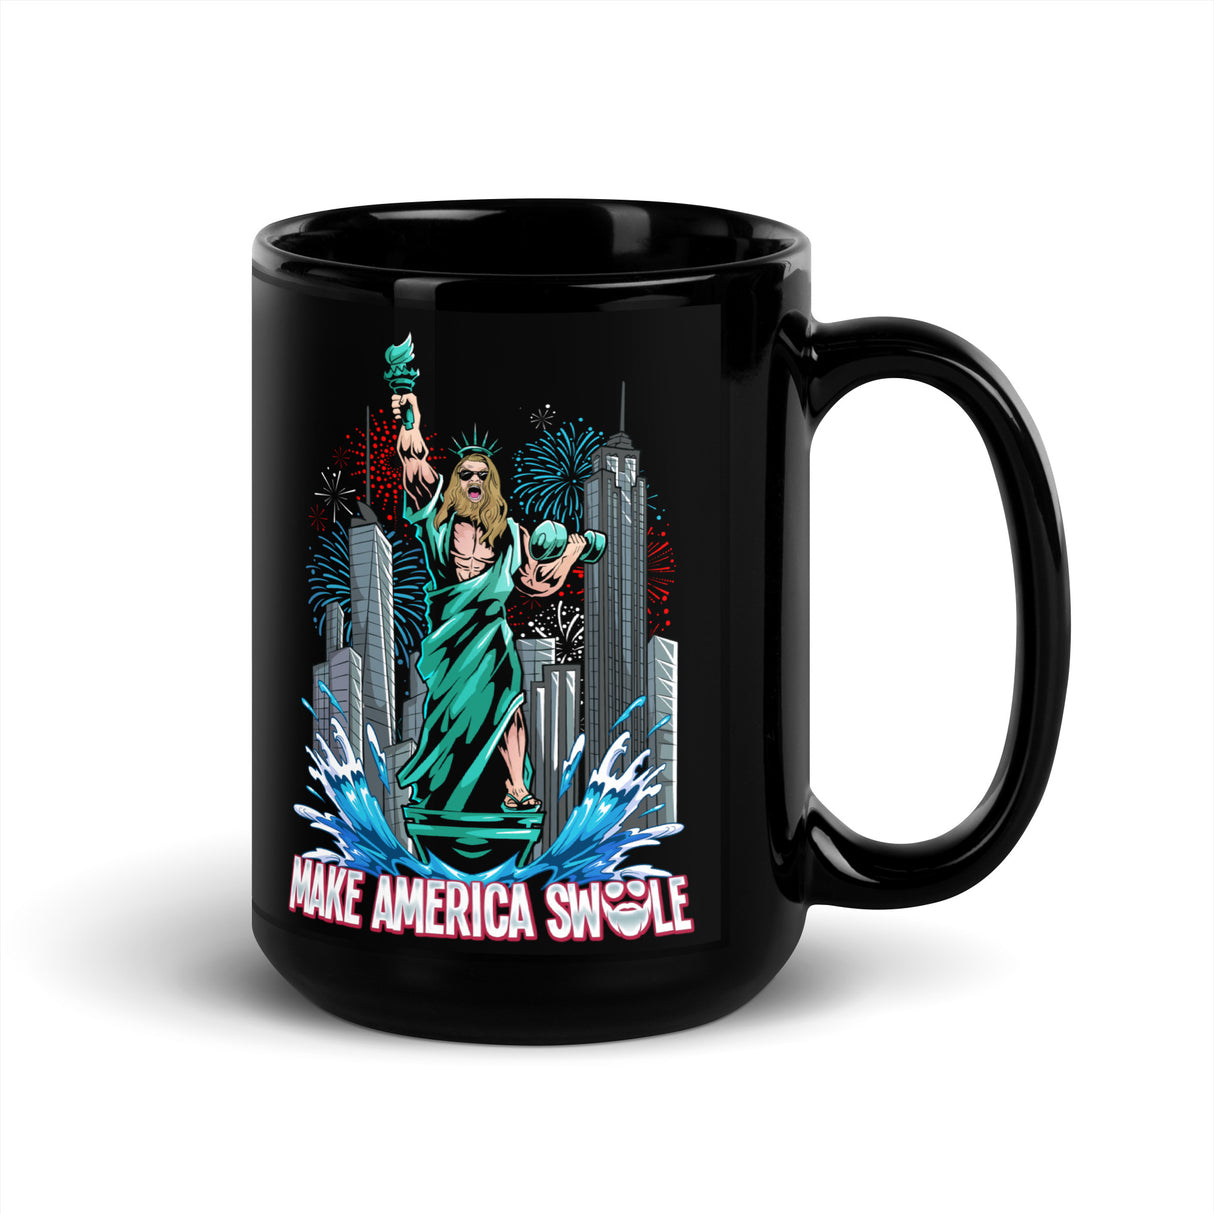 Make America Swole (Image) Mug